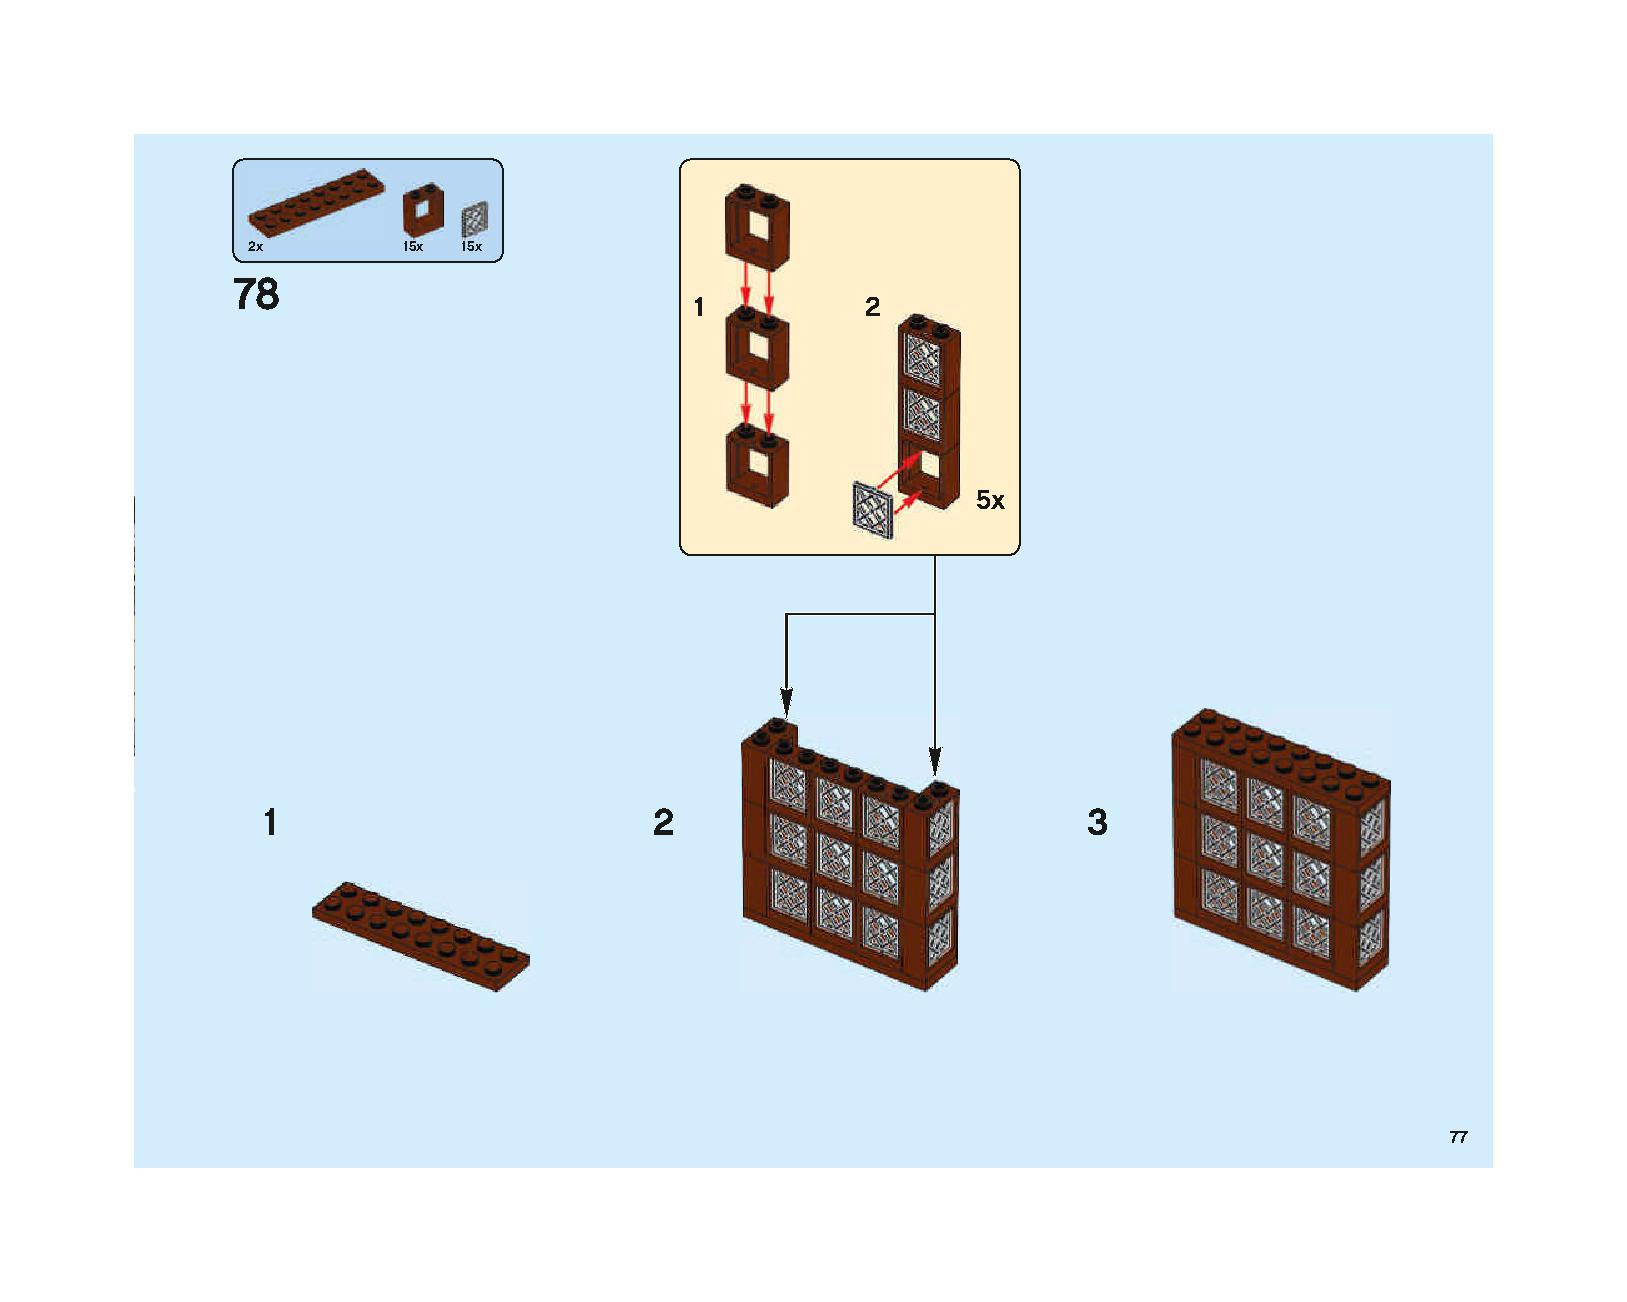 ホグワーツの大広間 75954 レゴの商品情報 レゴの説明書・組立方法 77 page